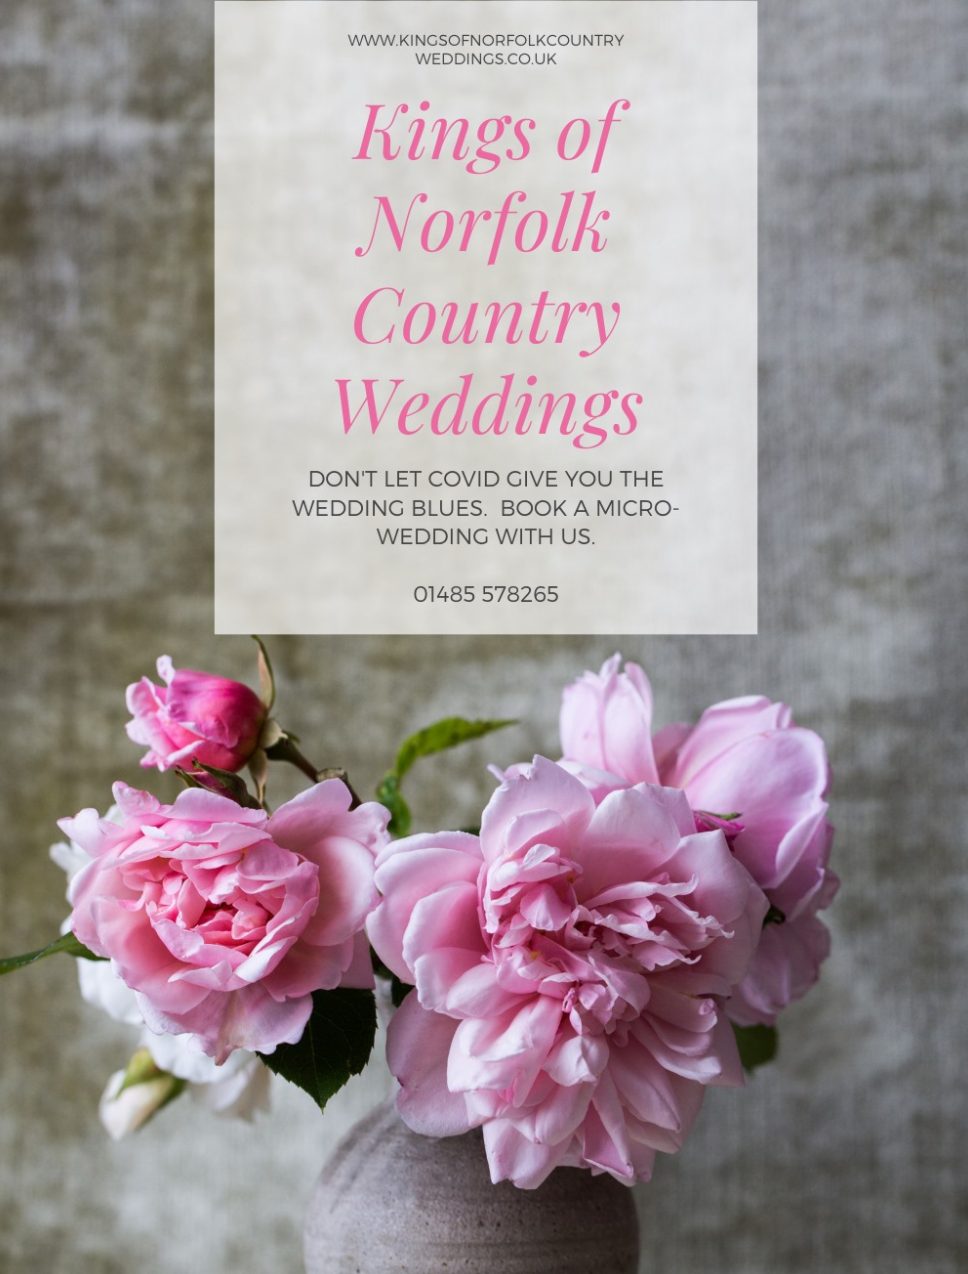 Kings of Norfolk Country Weddings-Image-15